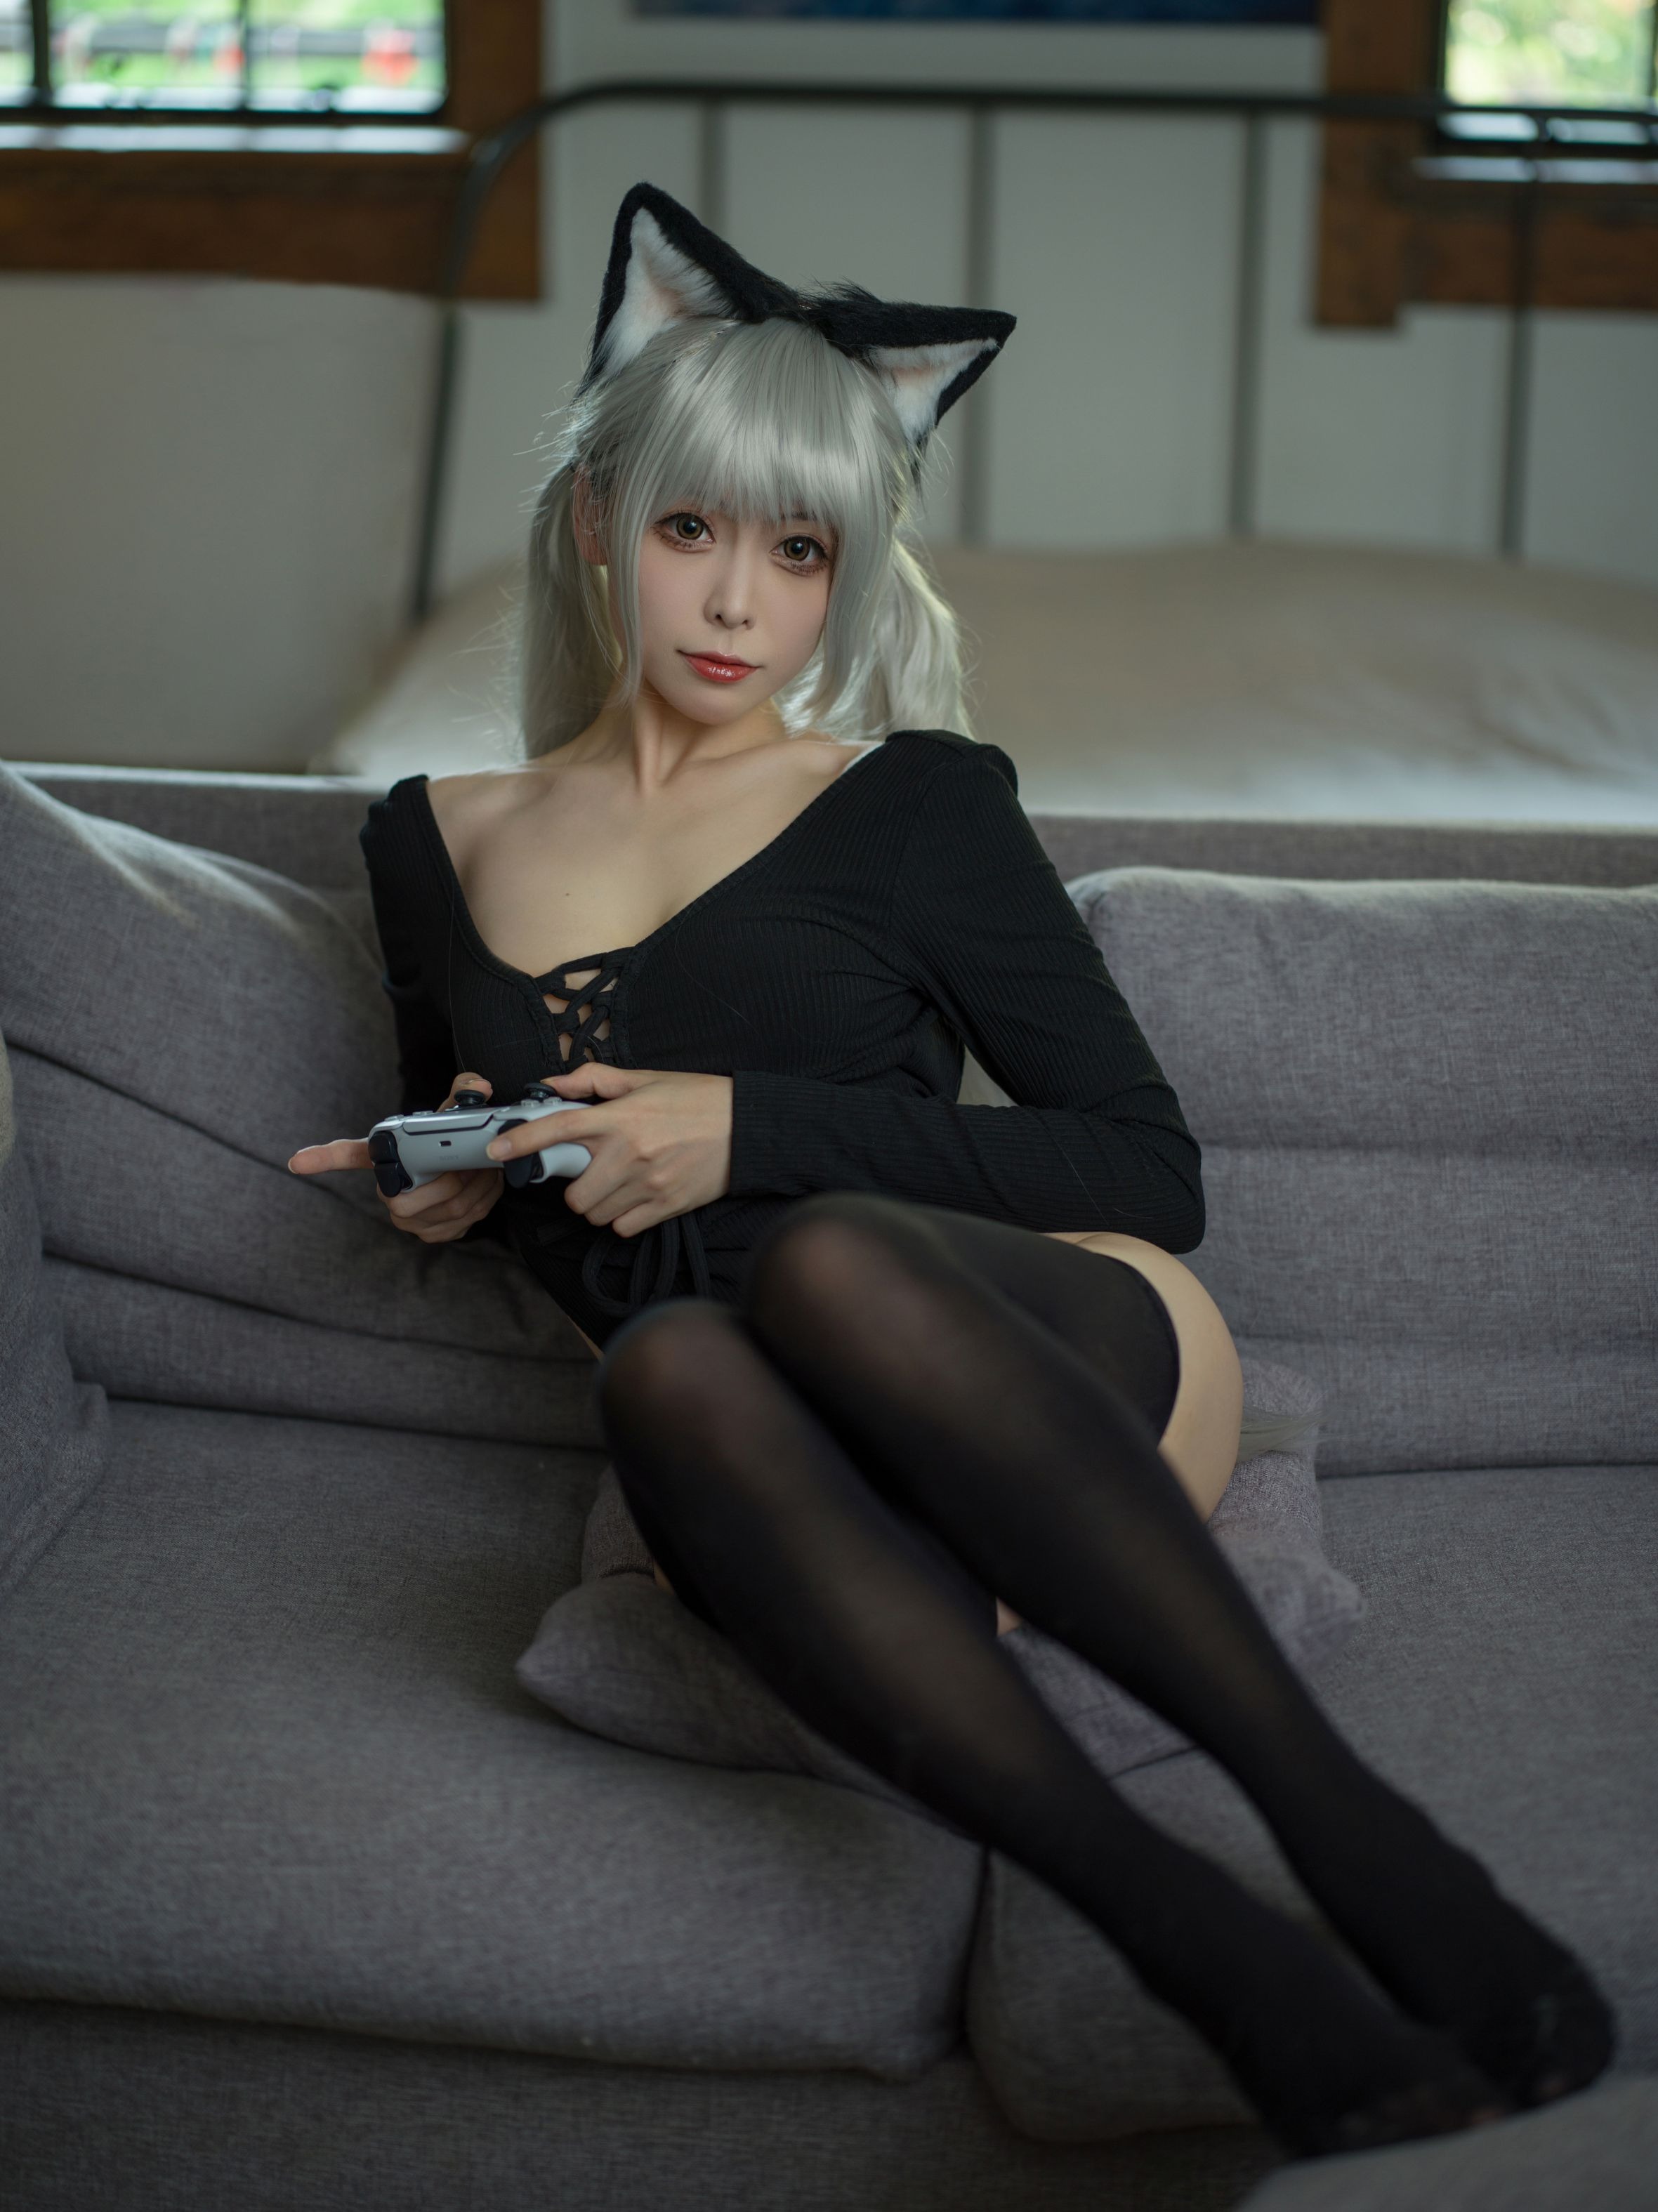 樱岛嗷一 黑猫针织衫连体衣 [57P1V-704MB](3)